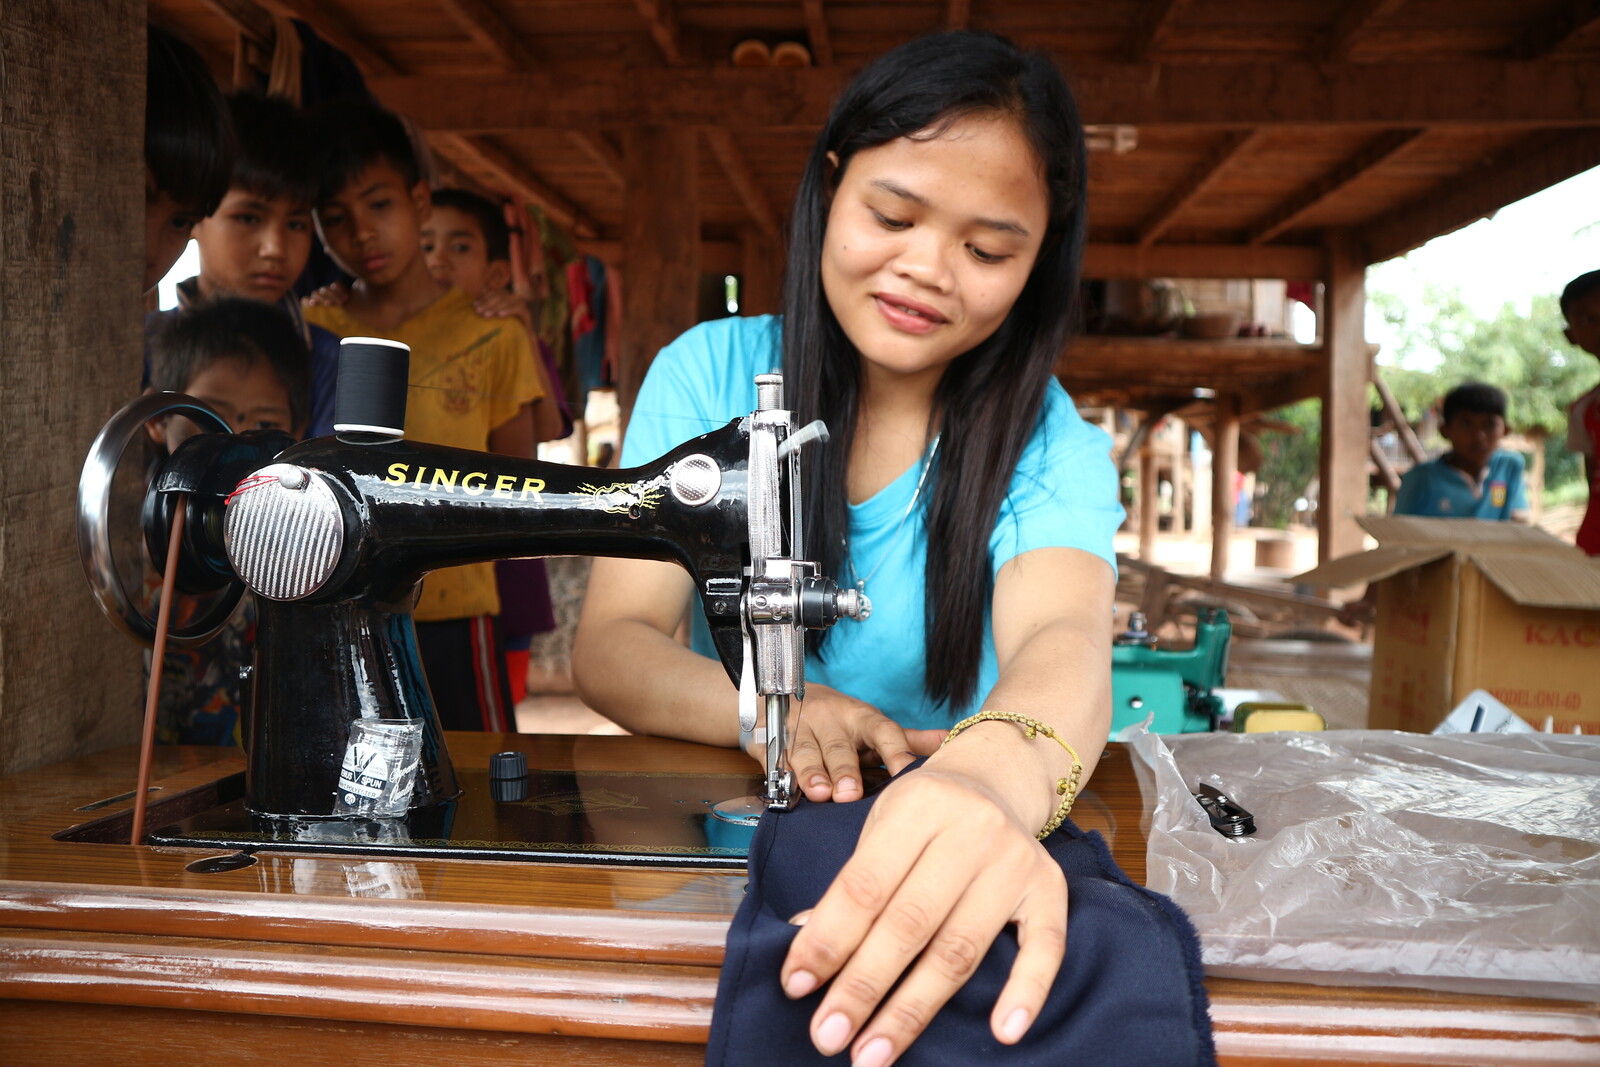 Frau Seangchan konnte dank des Hilfsprojekts eine Ausbildung zur Schneiderin machen